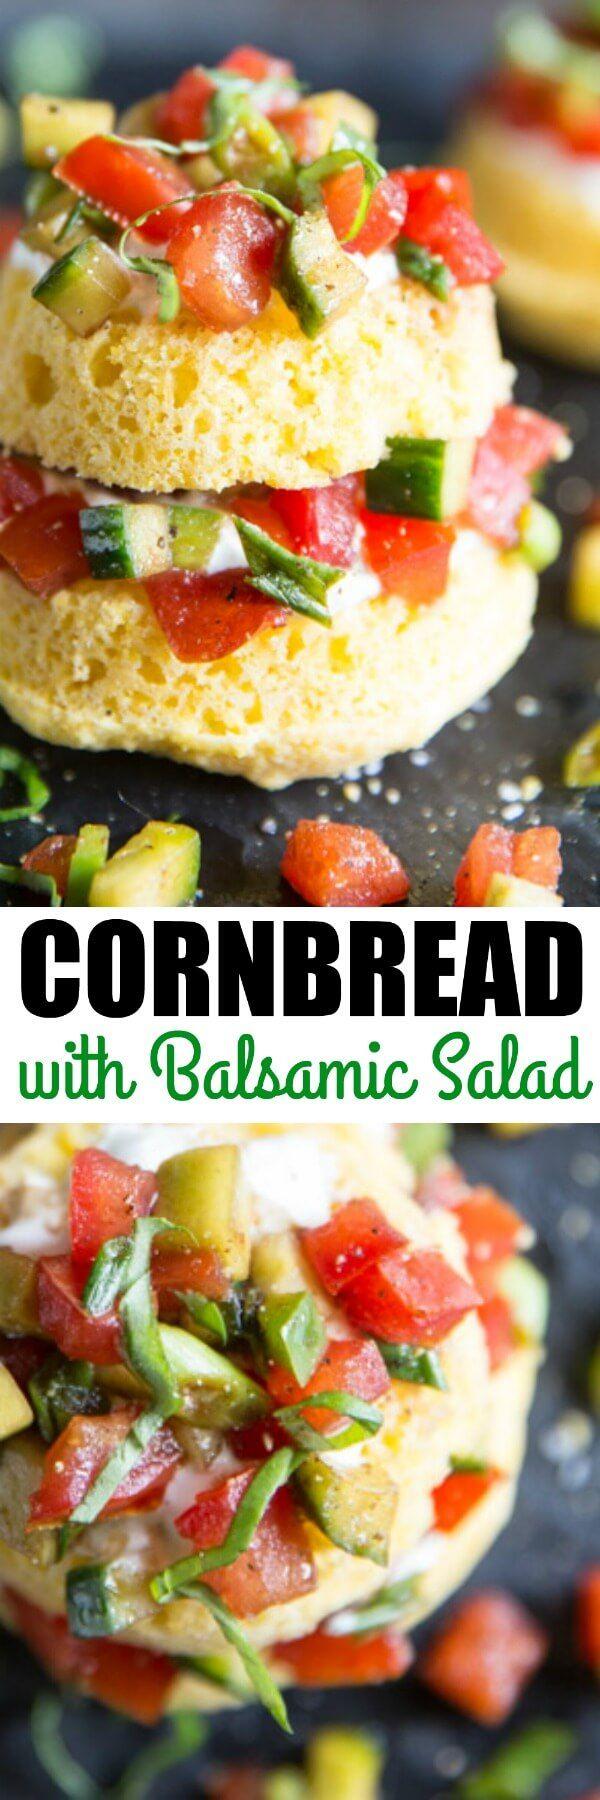 Свадьба - Cornbread Cakes With Balsamic Tomato Salad